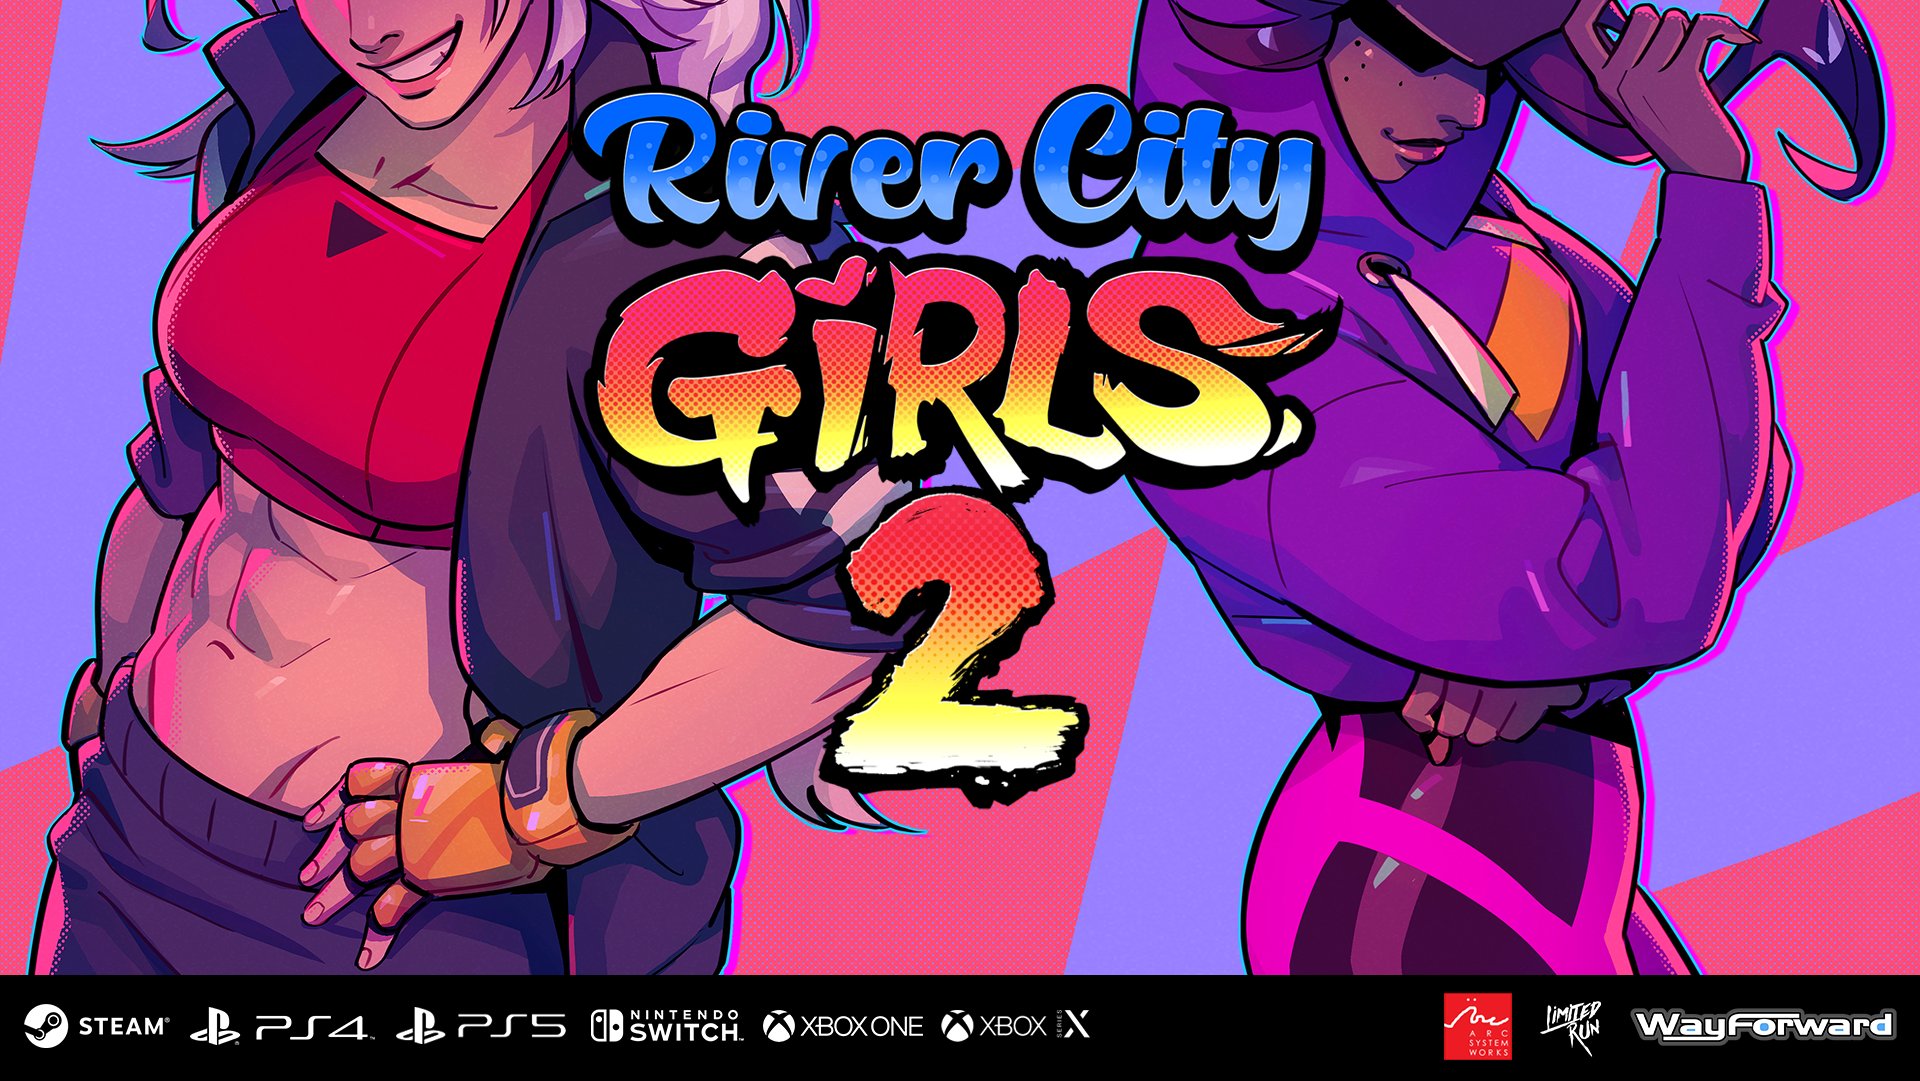 River City Girls 2 é anunciado para PS4 e PS5; River City Girls original  chegará ao PS5 - PSX Brasil